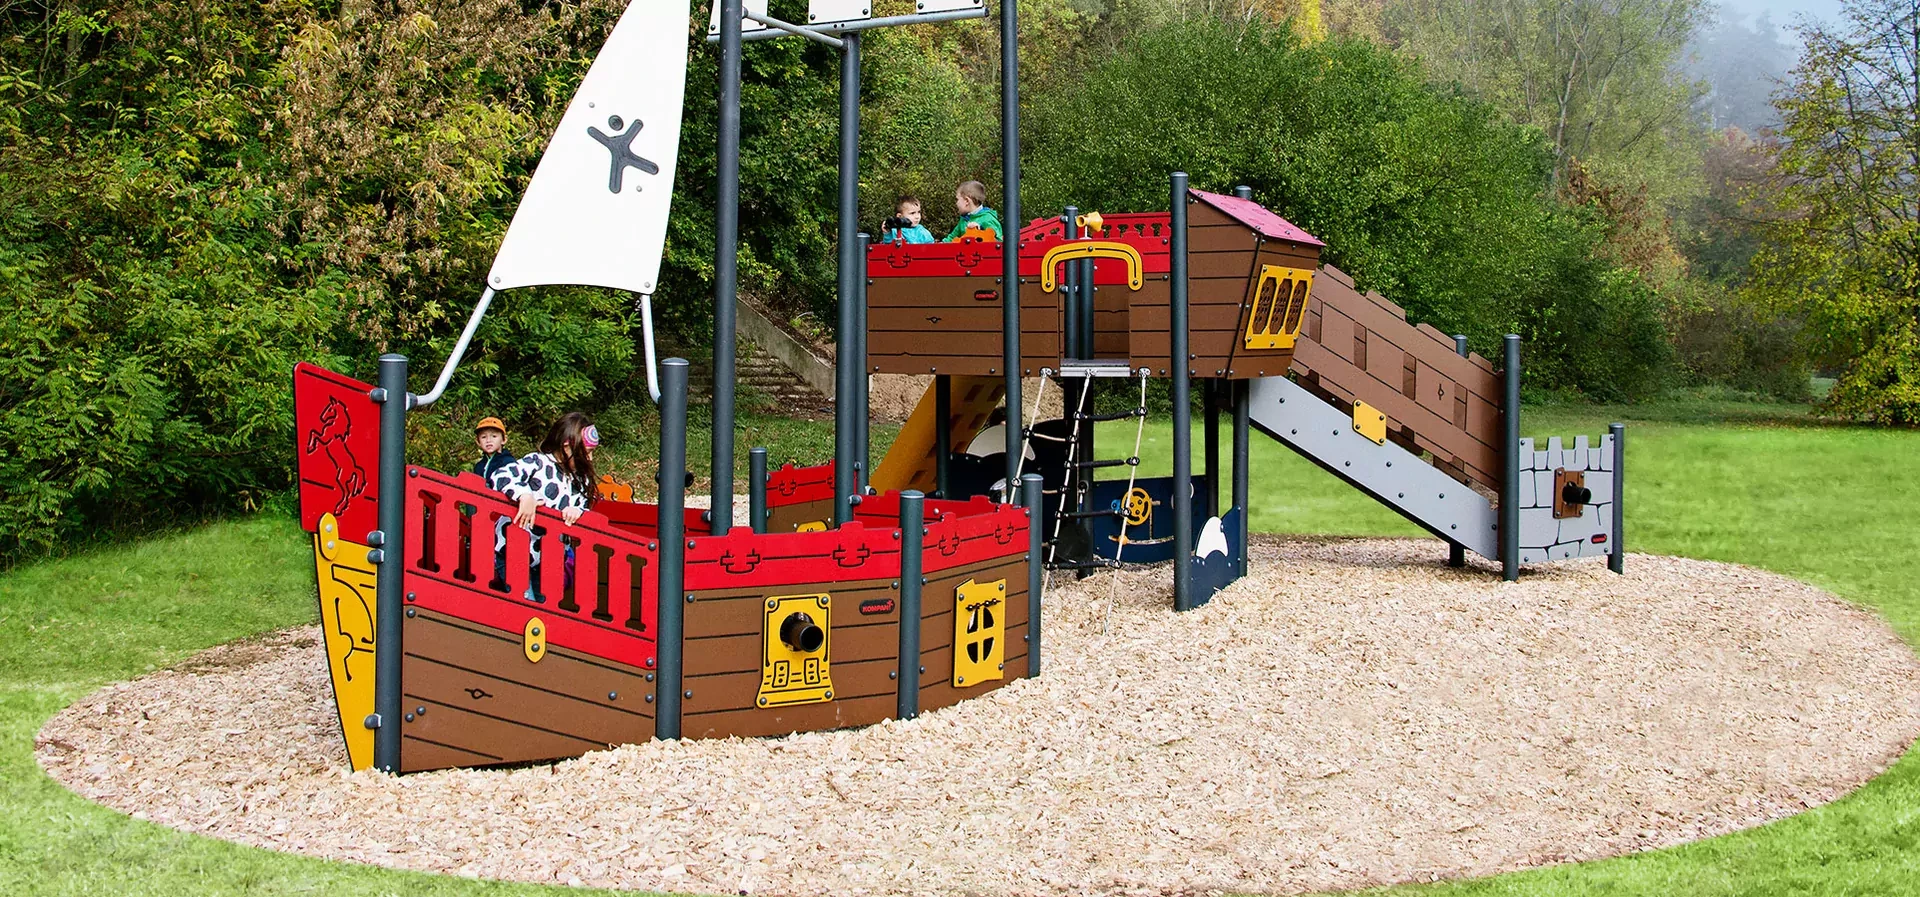 hero Bild von Kindern, die in einem Park auf einem Spielplatz Schiff spielen